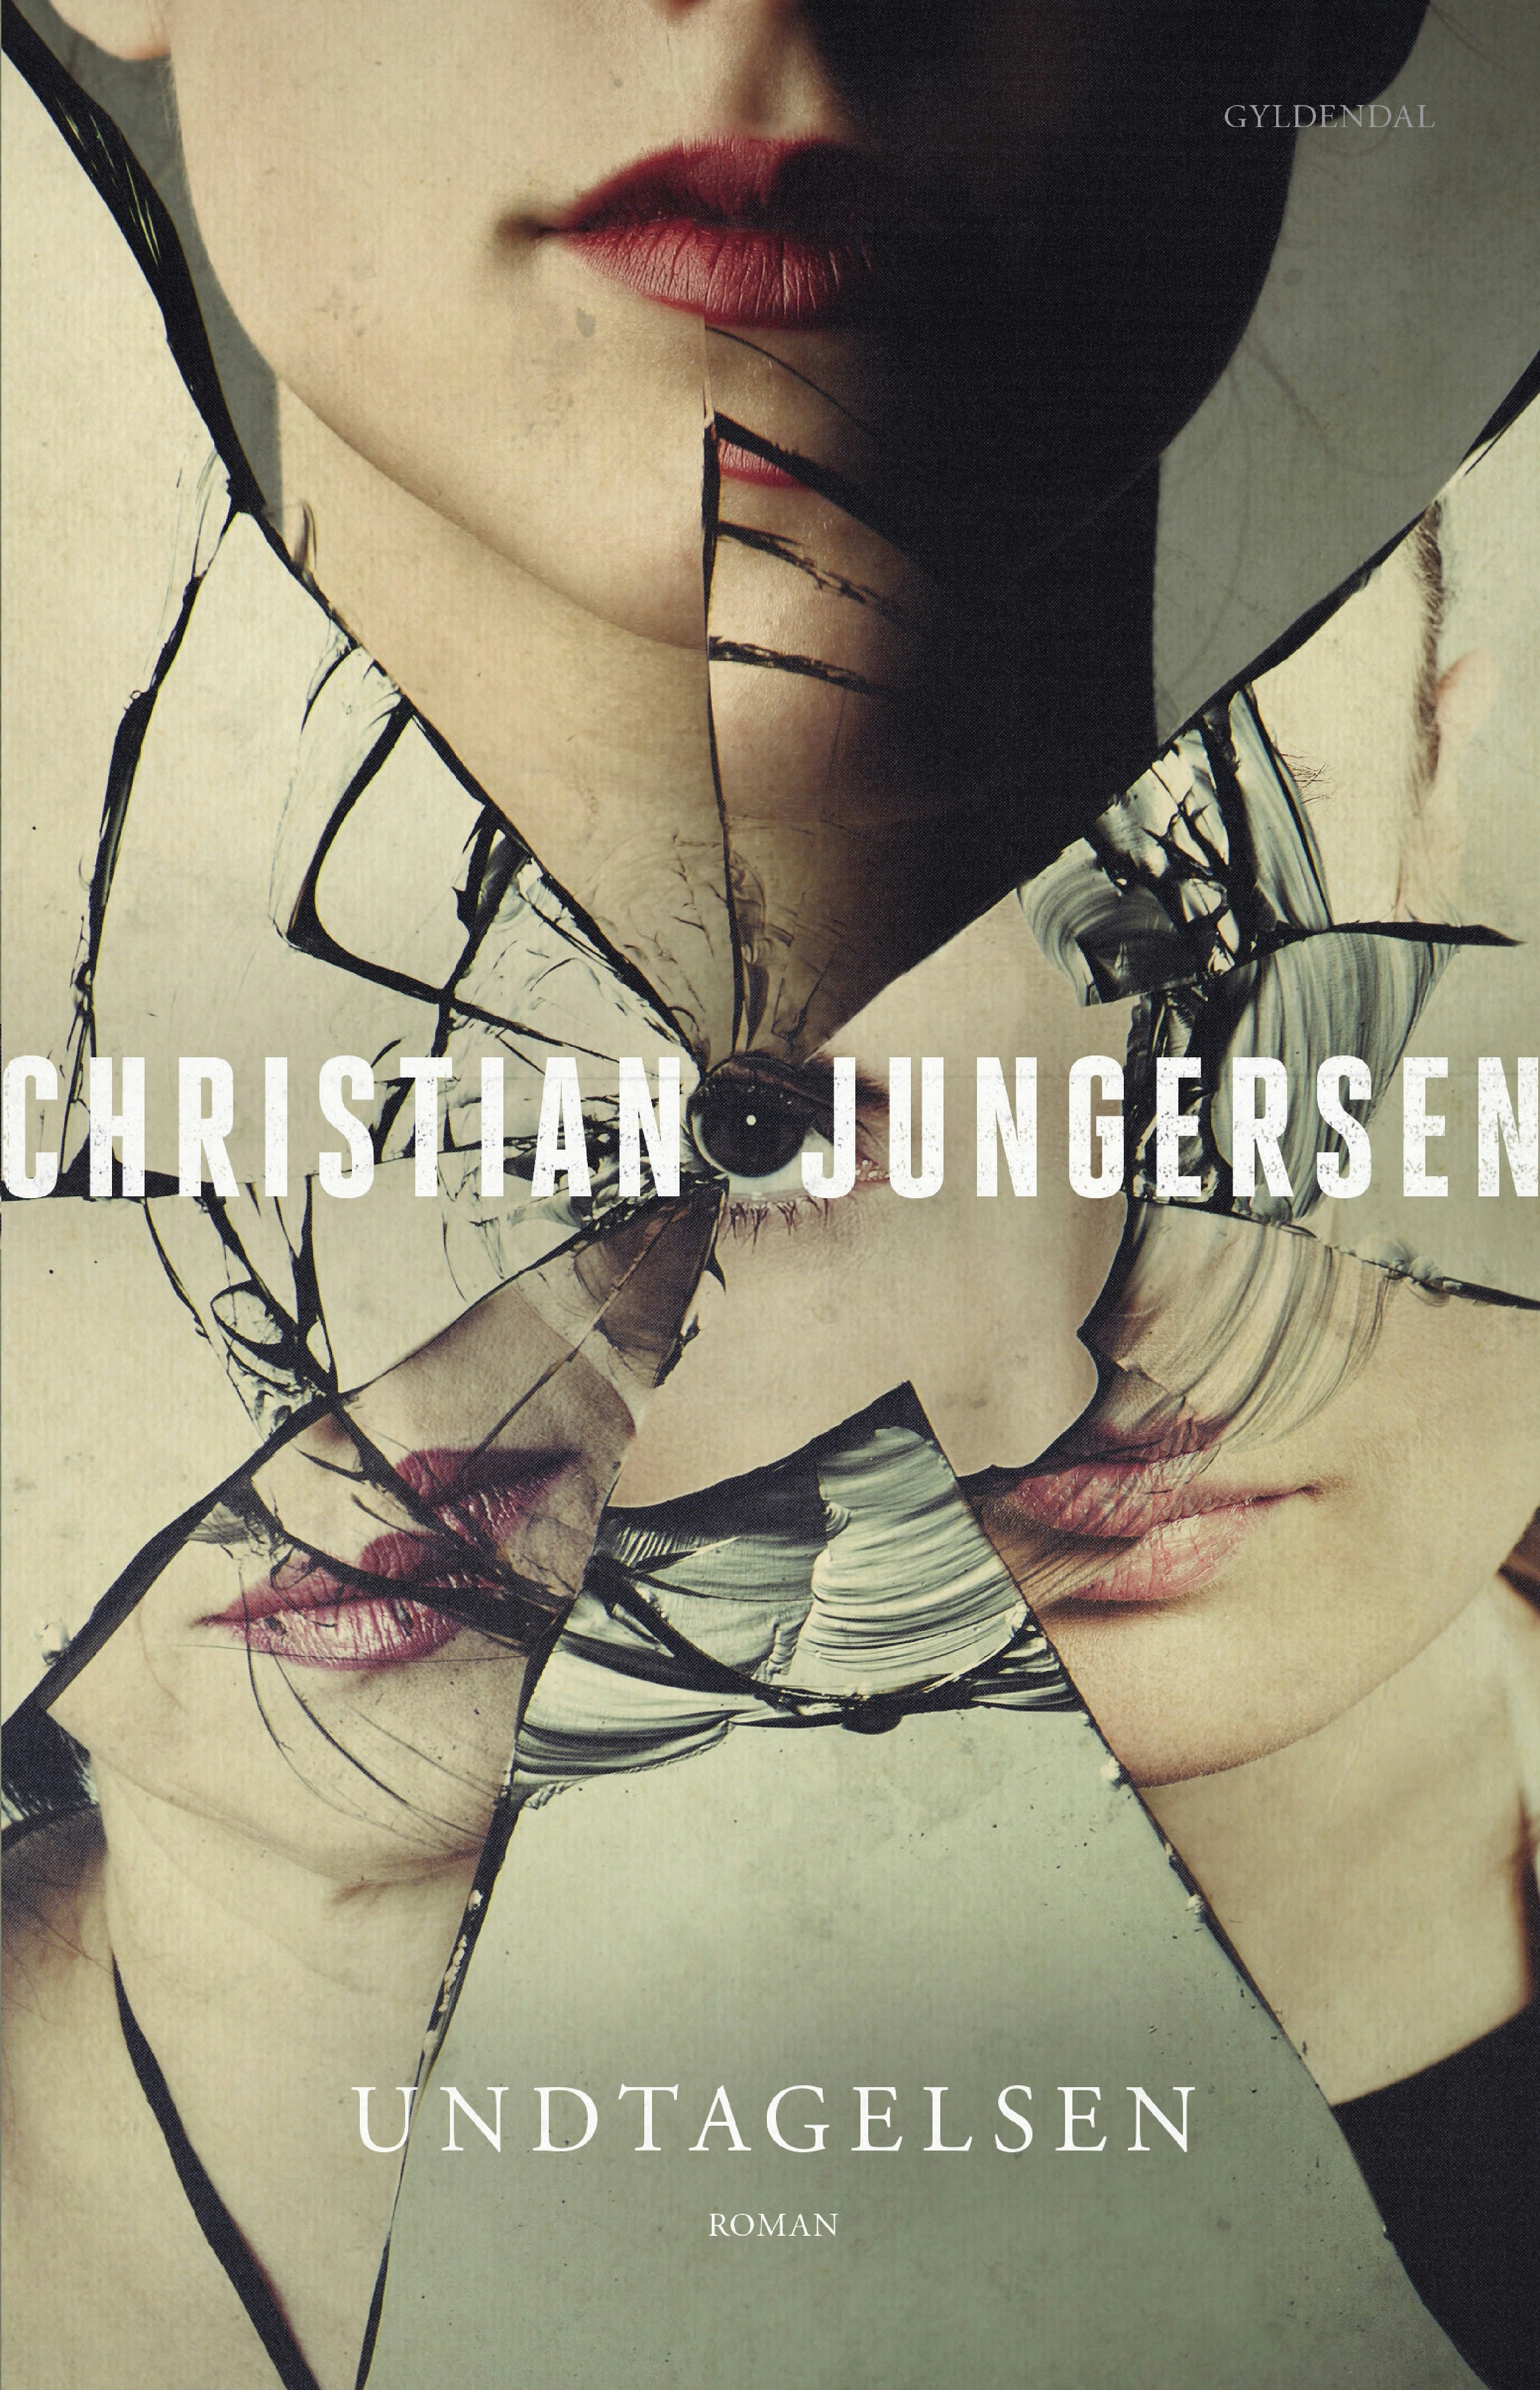 Undtagelsen er Christian Jungersens prisvindende psykologiske thriller fra 2004.